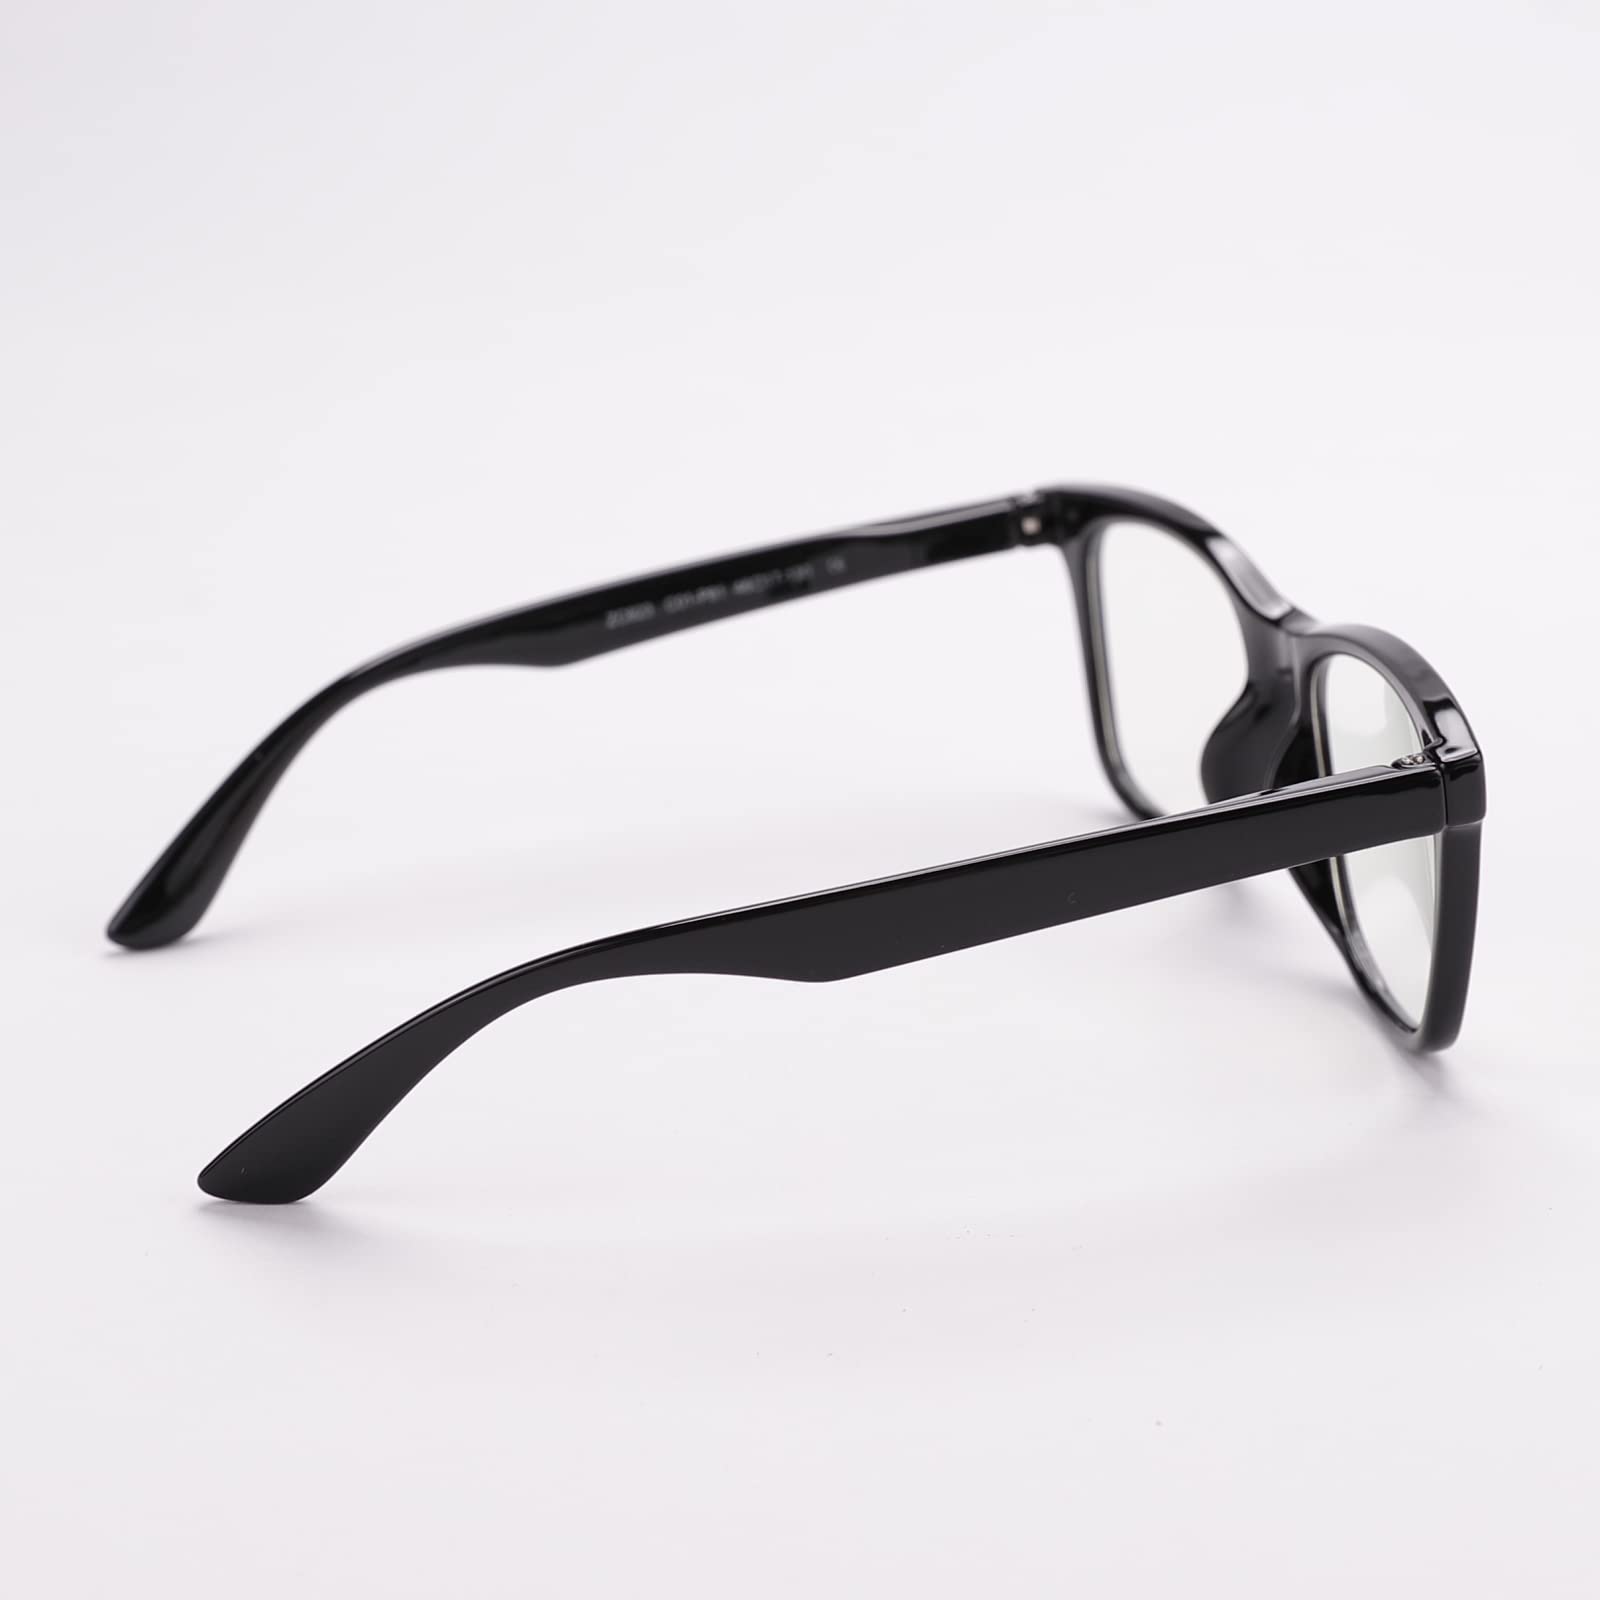 Intellilens Wayfarer Kids Computer Glasses for Eye Protection | Zero Power, Anti Glare & Blue Light Filter Glasses | Blue Cut Lenses for Boys and Girls (Black) (48-17-130)…